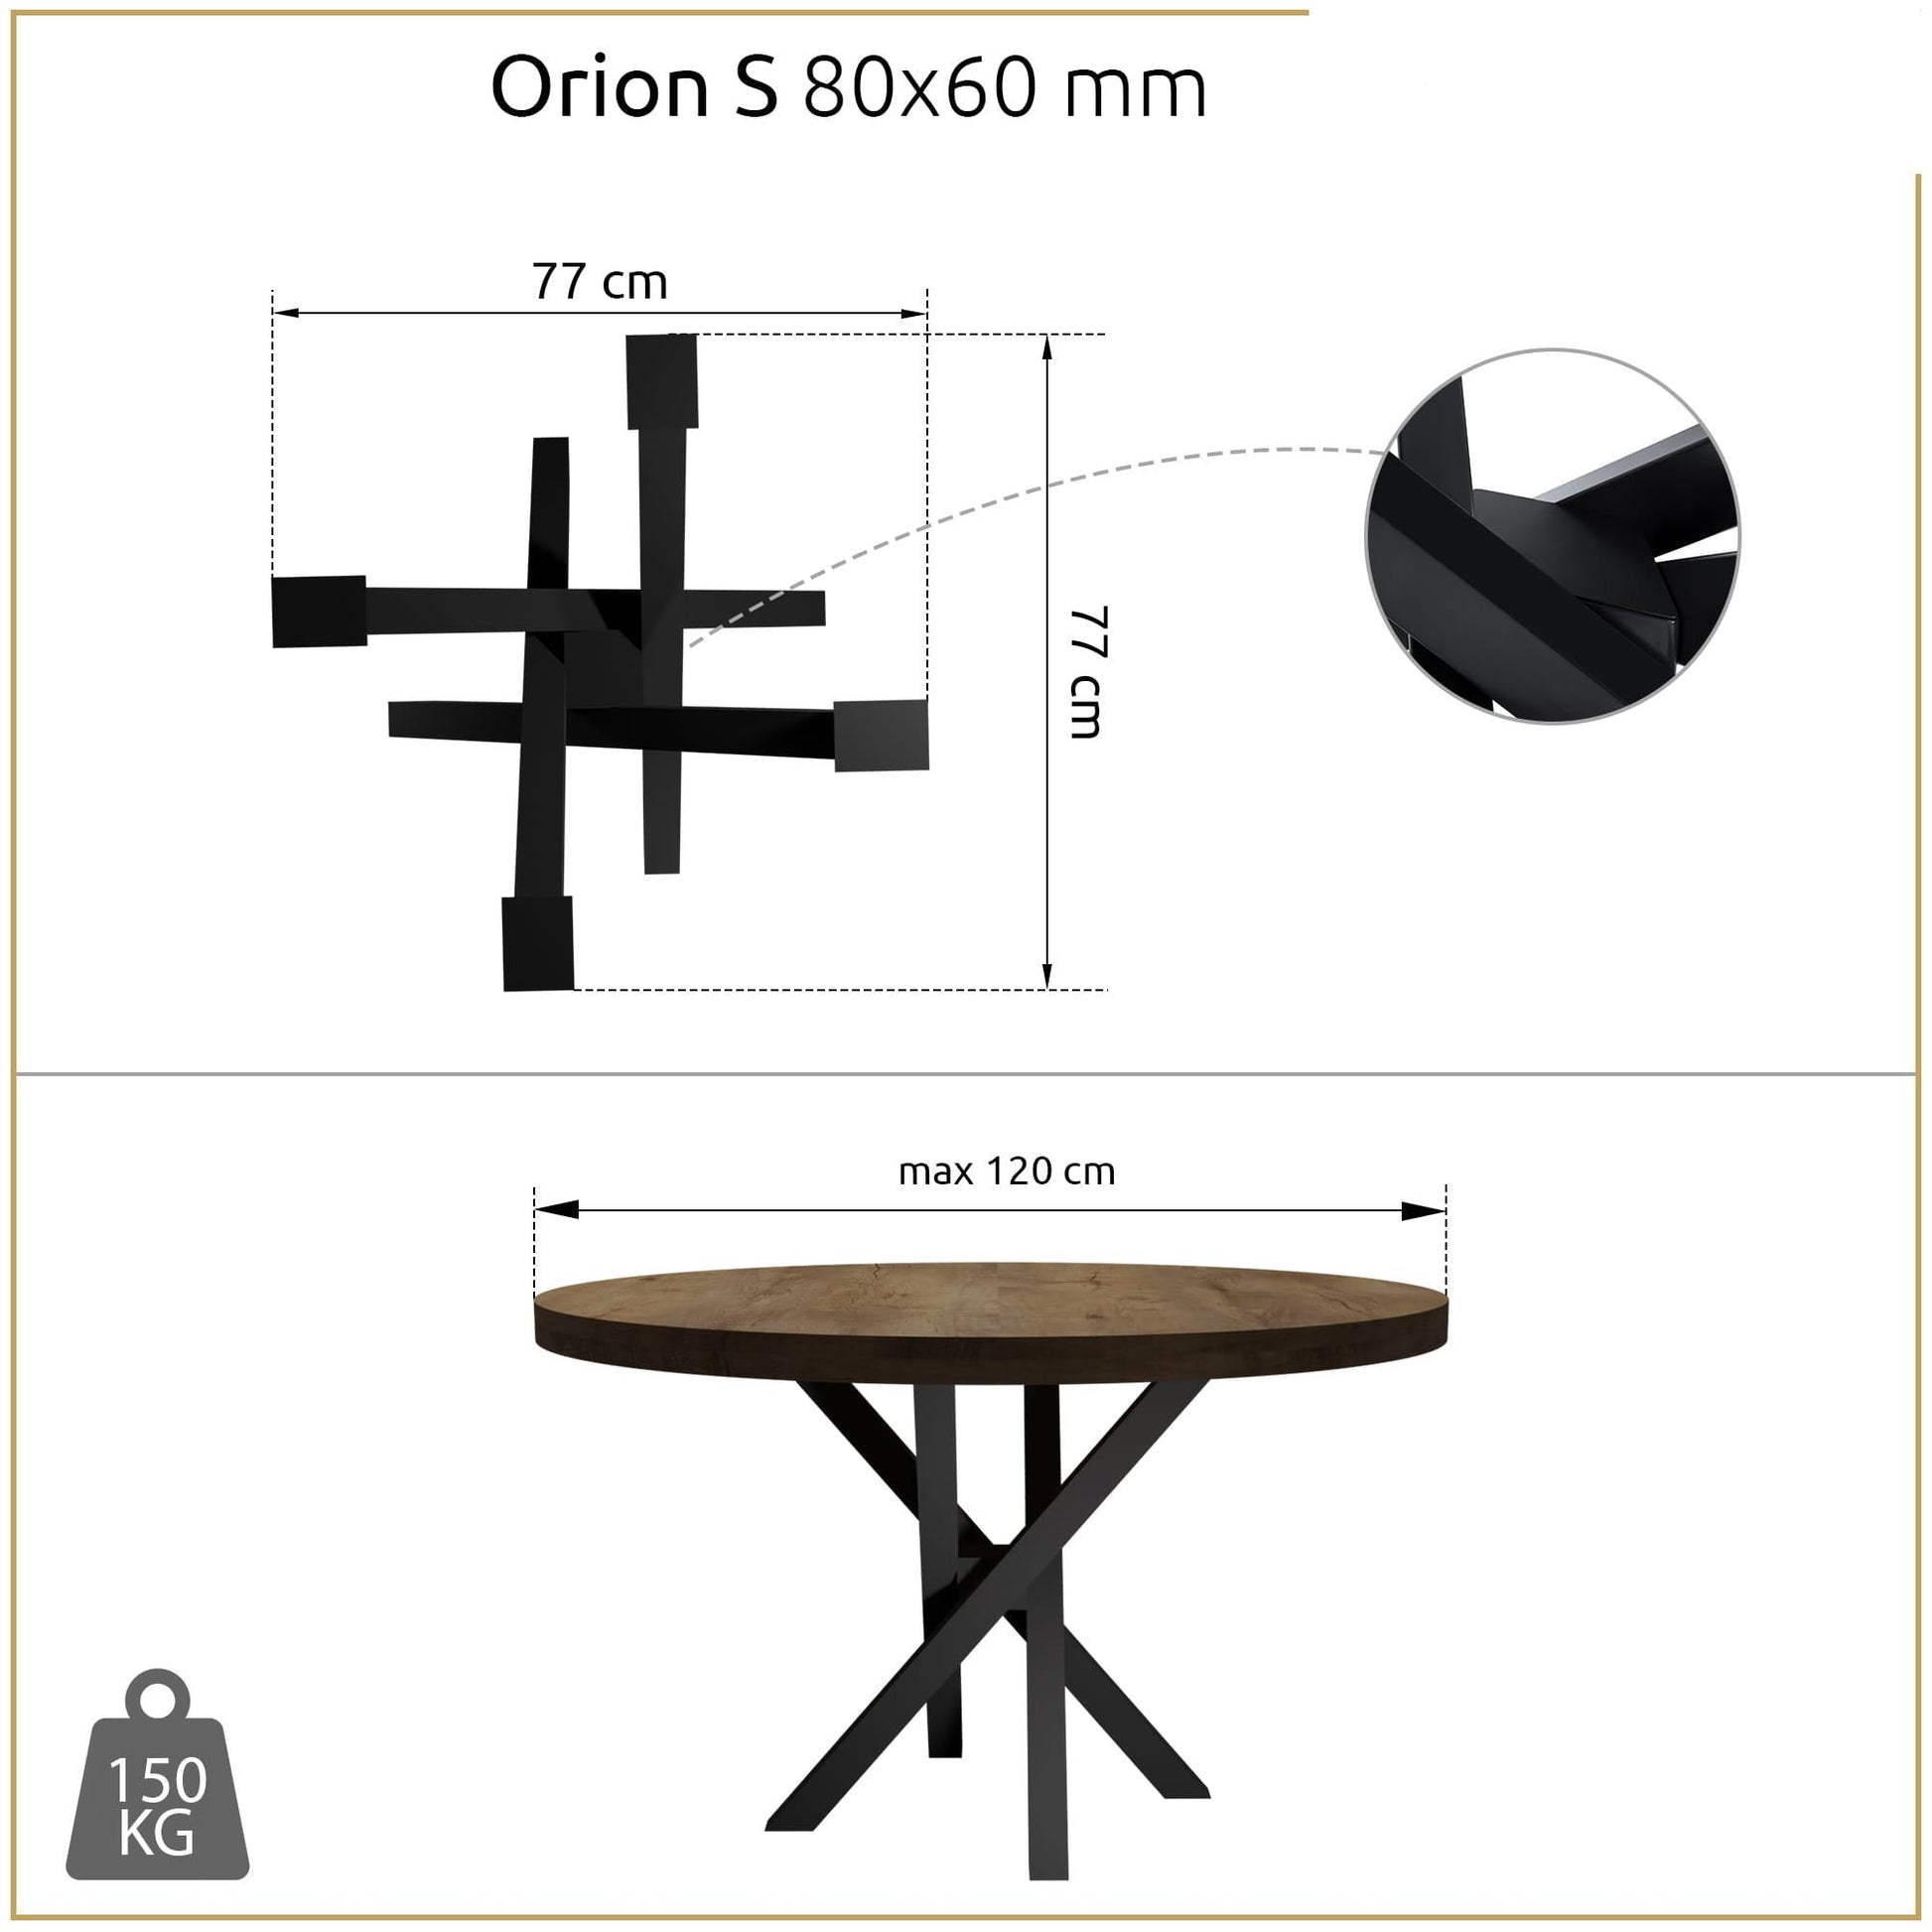 Metallinen Pöydänjalka Orion S mitat